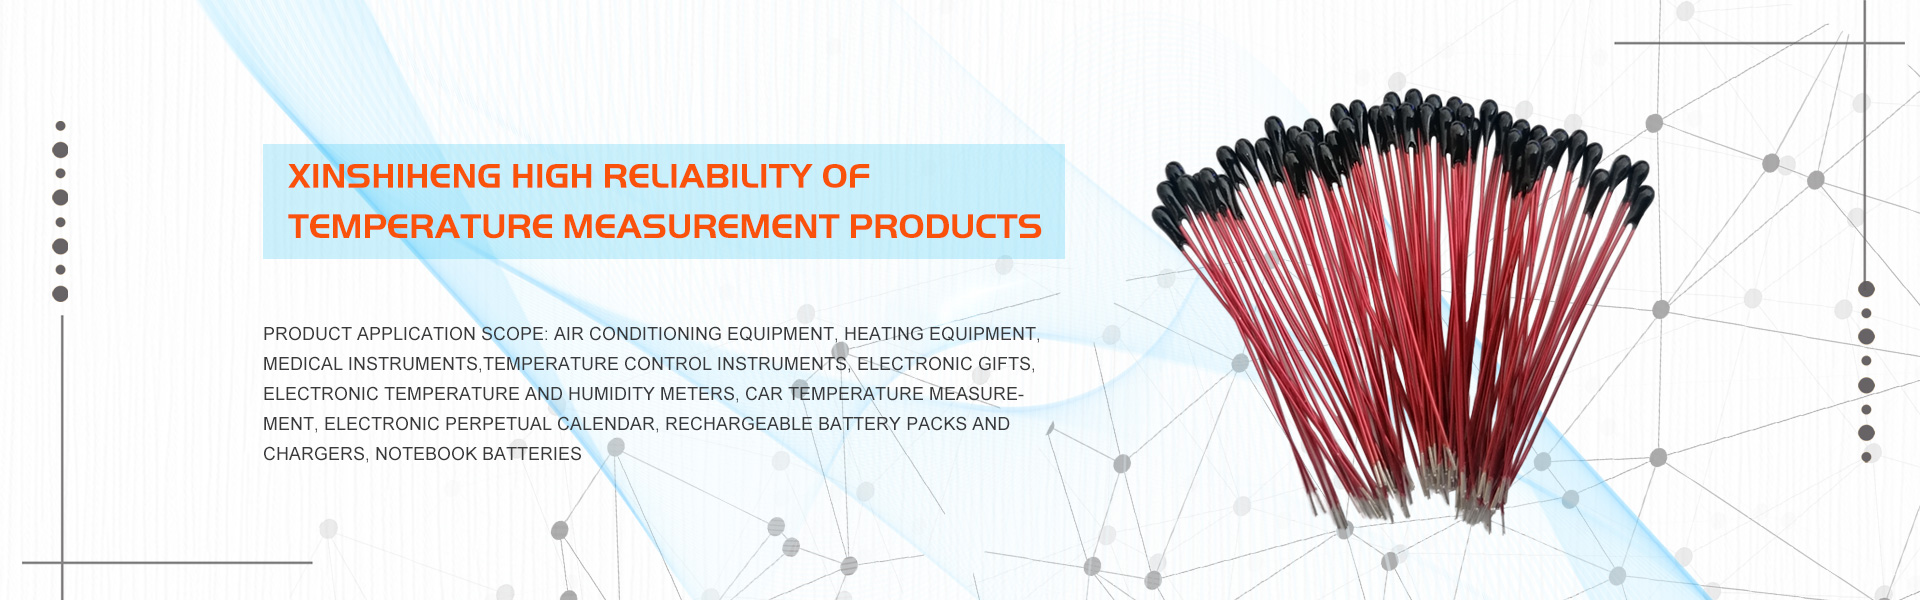 Nhà sản xuấtnhiệt điệnnhiệt NTC, cảm biếnnhiệt độ, độ chính xác cao,GUANGDONG XINSHIHENG TECHNOLOGY CO.,LTD